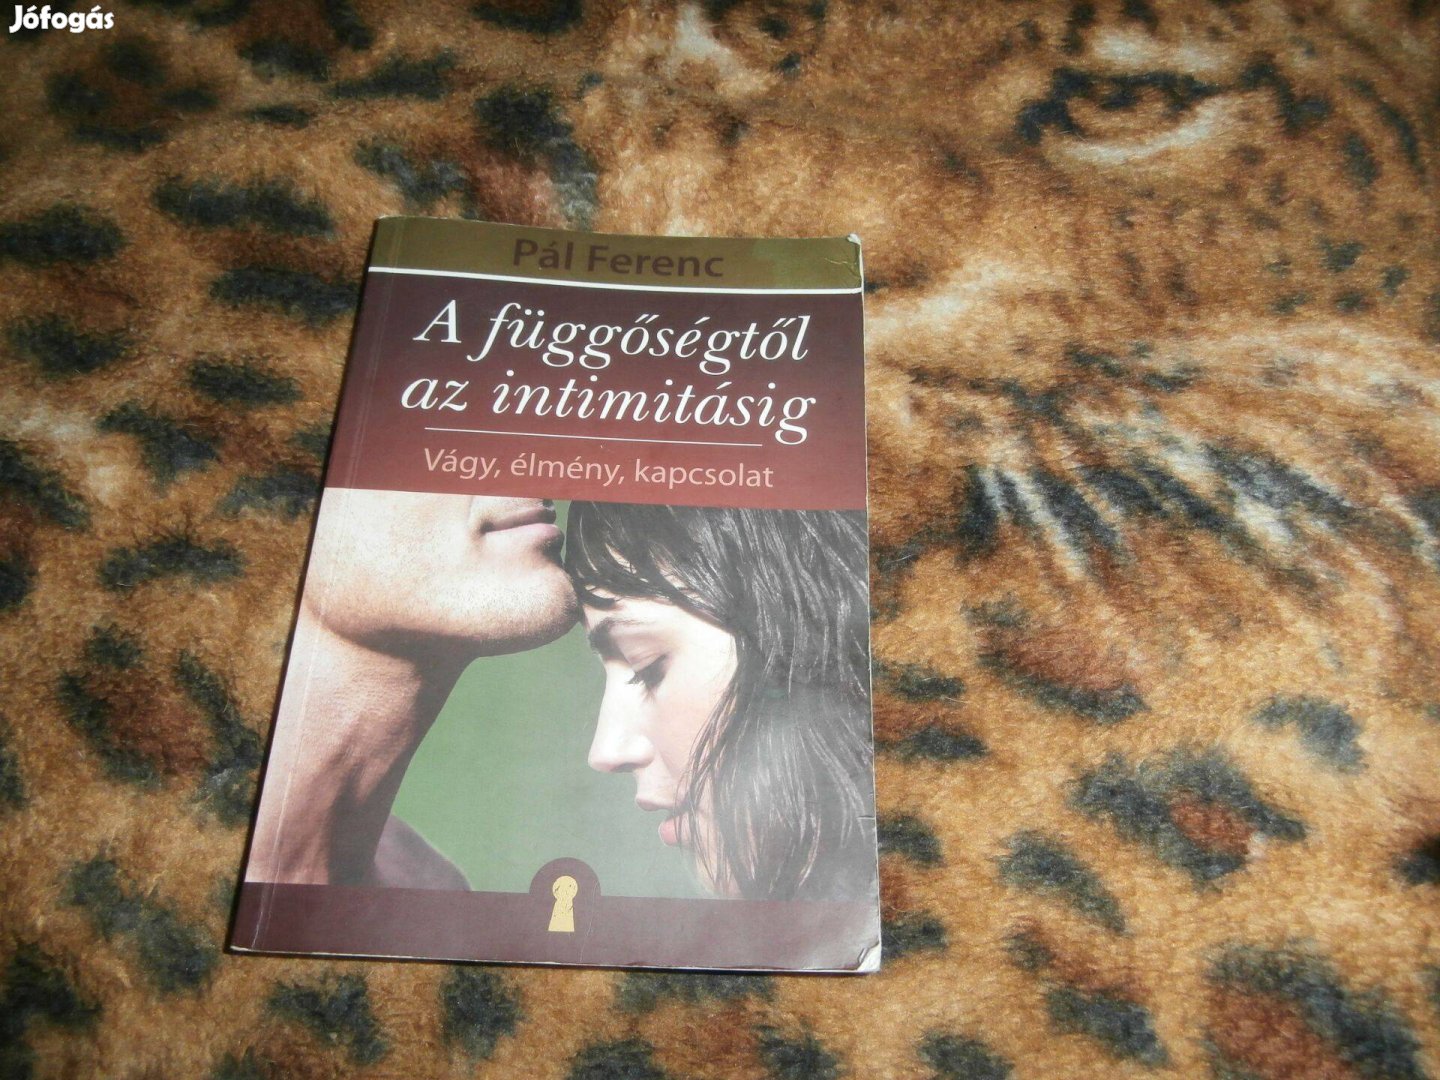 Pál Ferenc A függőségtől az intimitásig könyv